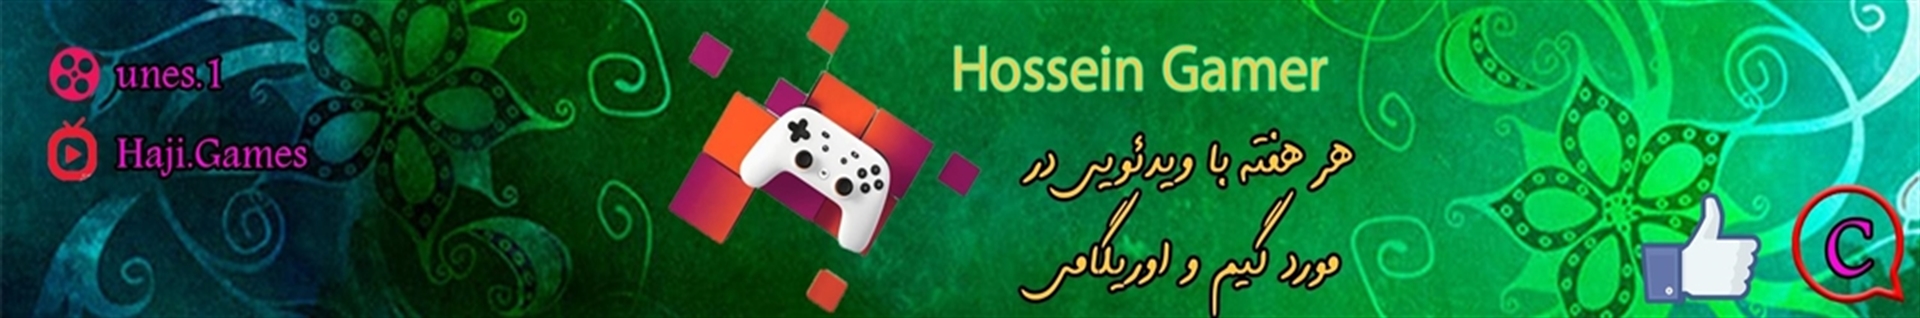 hossein Gamer